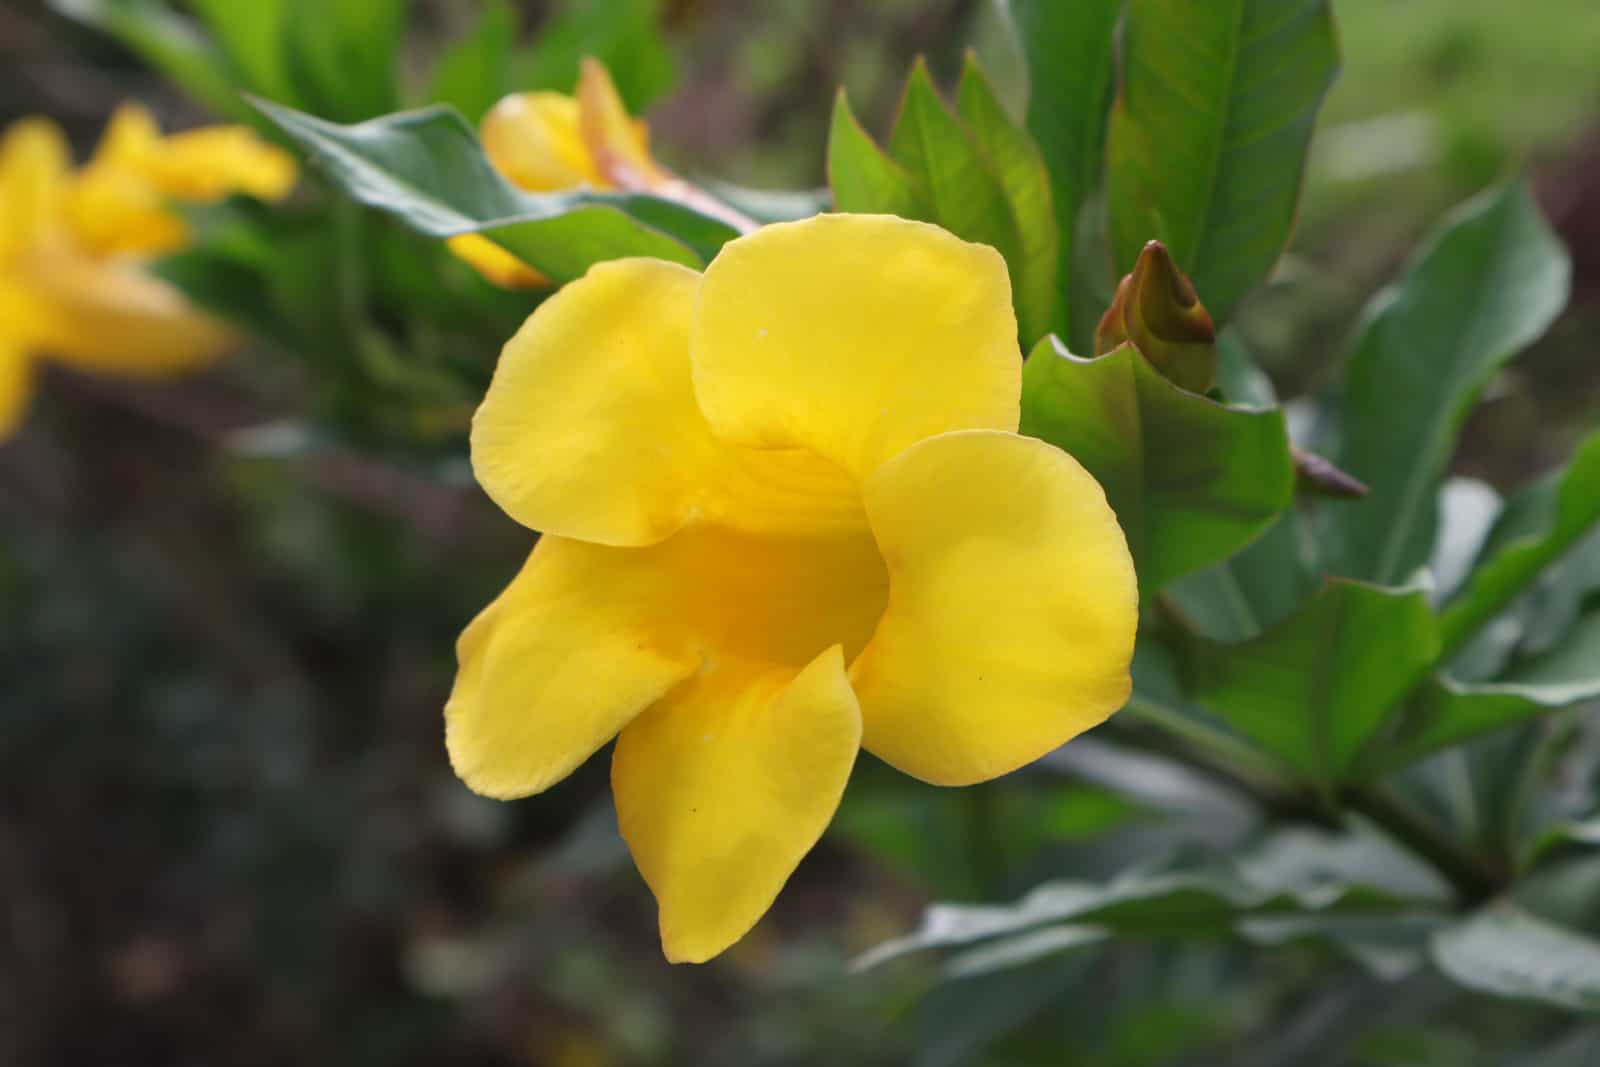 Five-petaled yellow flower of Bush allamanda.